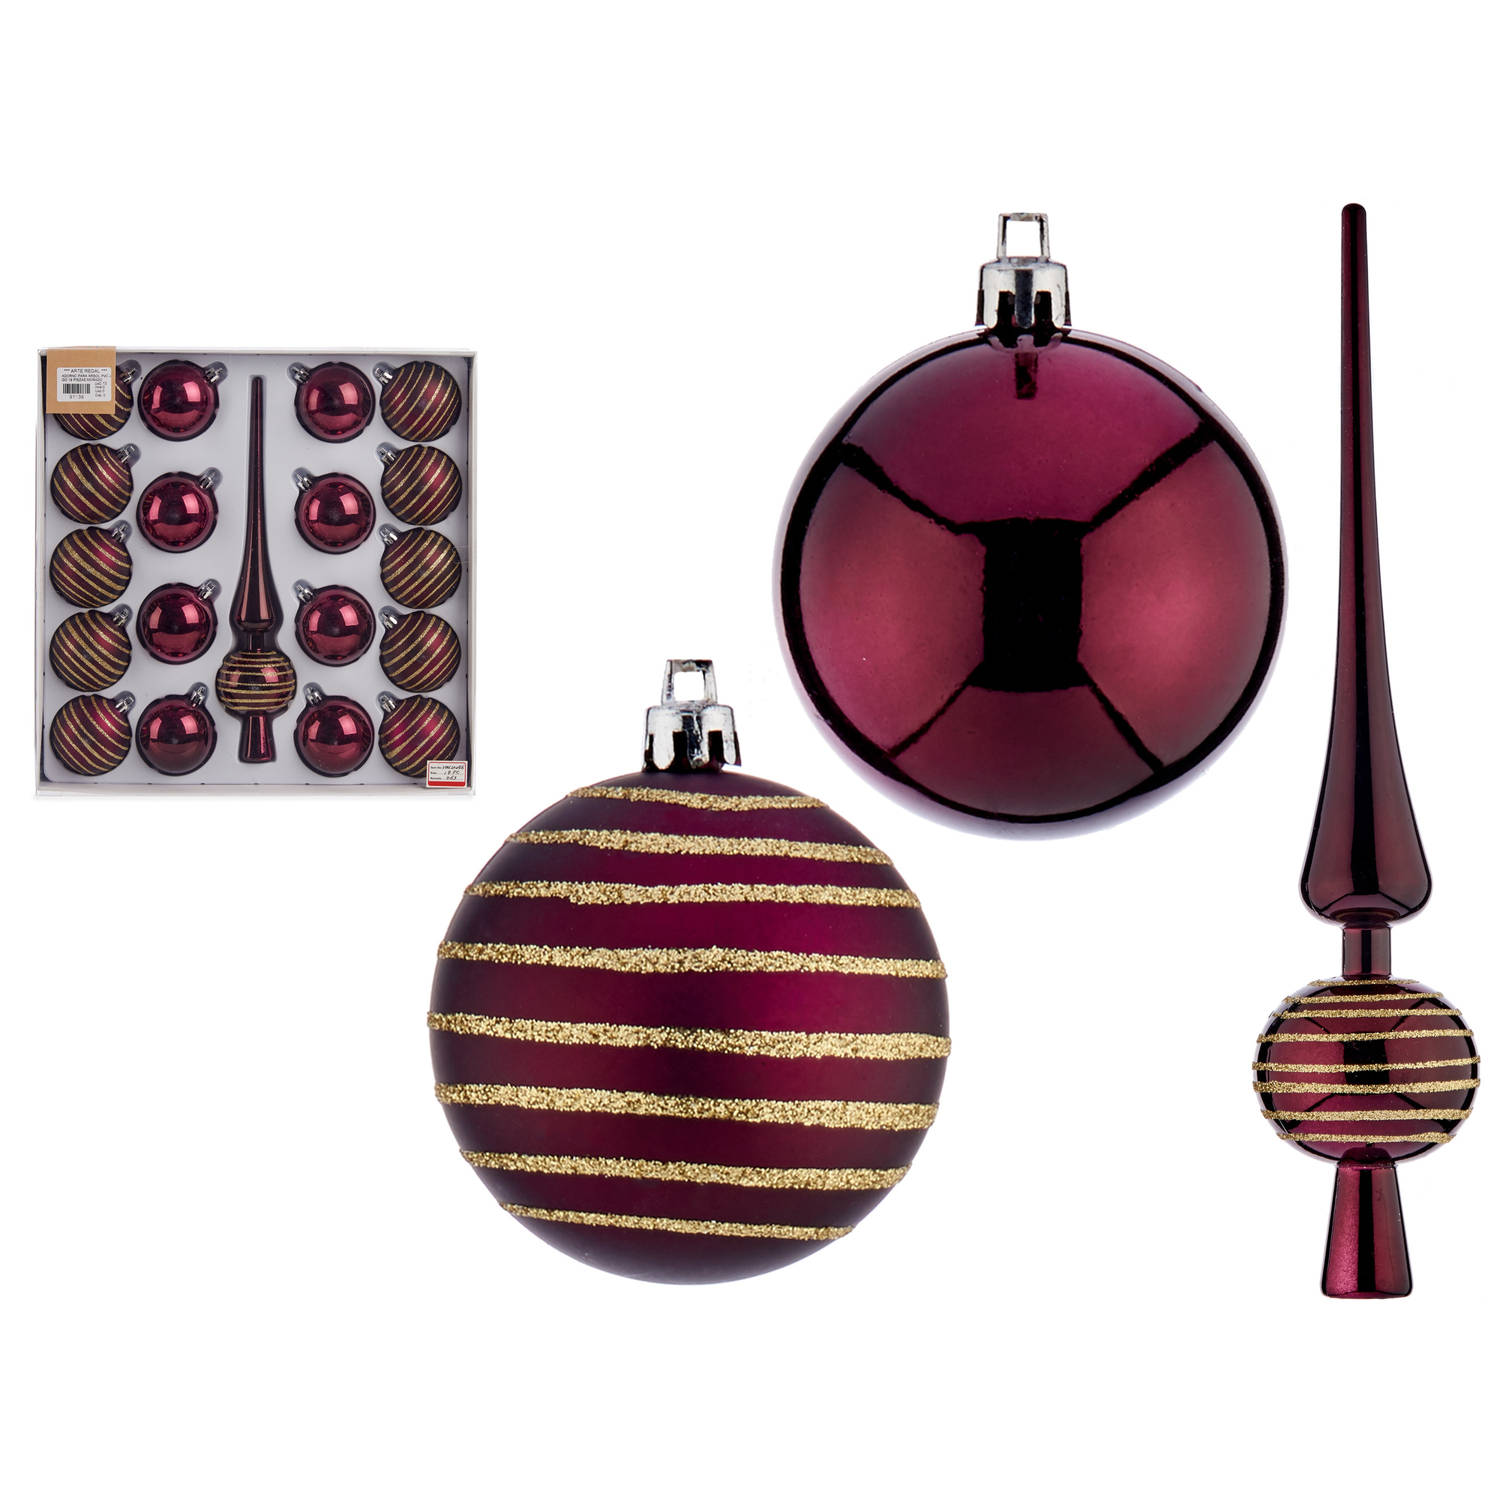 Arte R kerstballen 6 cm - met piek - 19-delig - wijn/bordeaux rood - kunststof